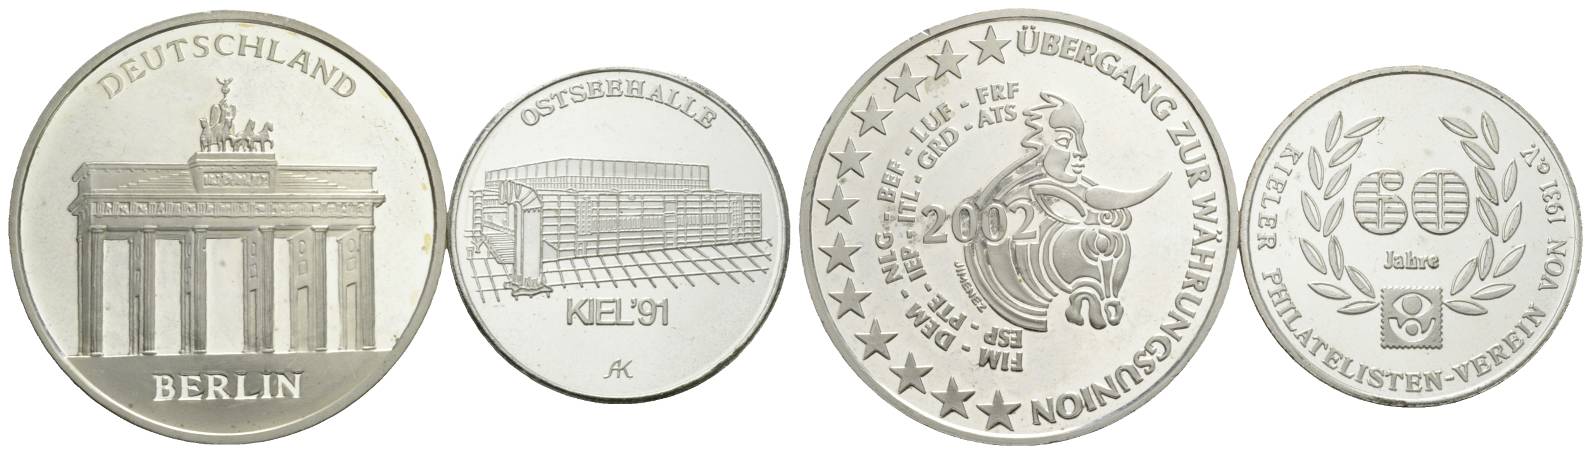  Deutschland; 2 Medaillen; PP Cu/Ni;12,48 g; Ø 30,26 mm / 18,28 g; Ø 38,62 mm   